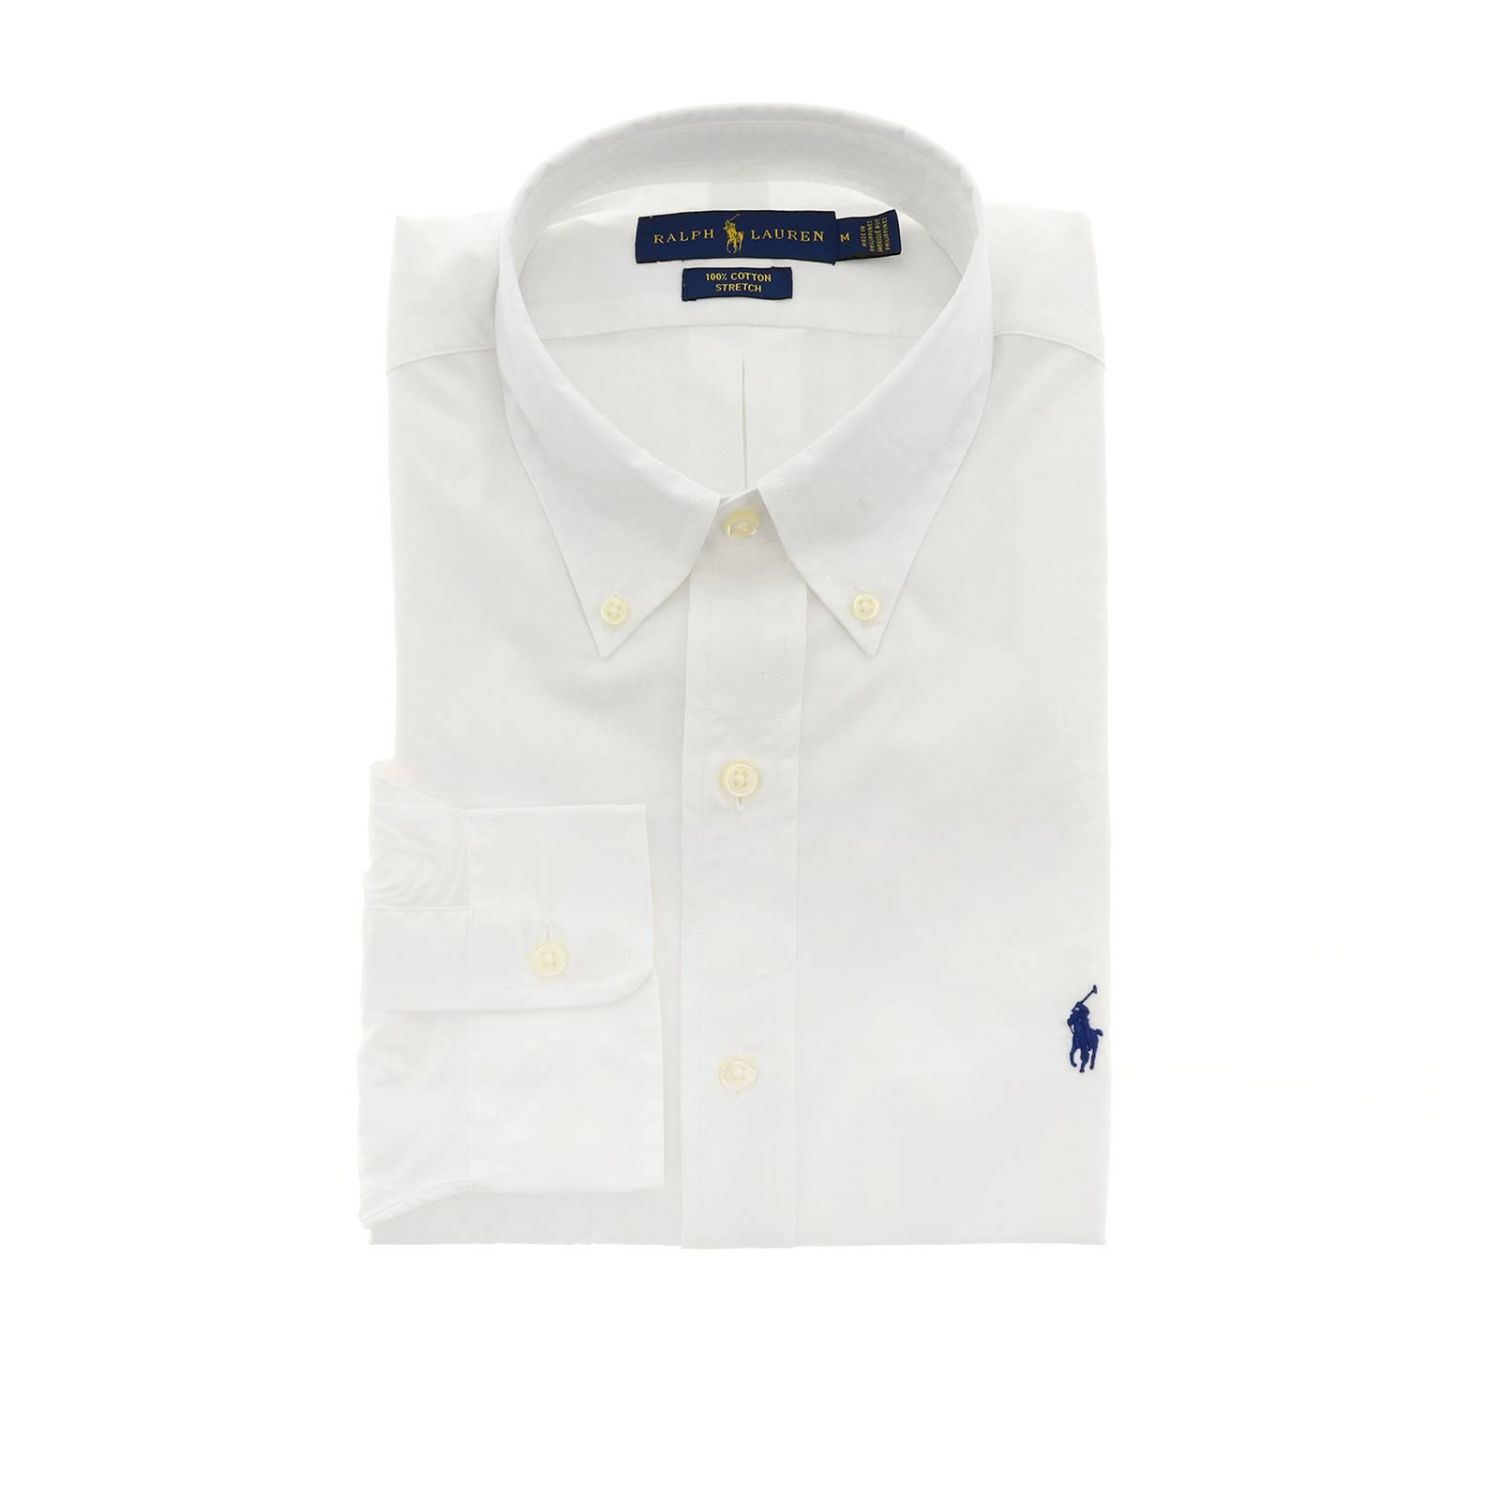 Polo Ralph Lauren Outlet: Shirt men | Shirt Polo Ralph Lauren Men White ...